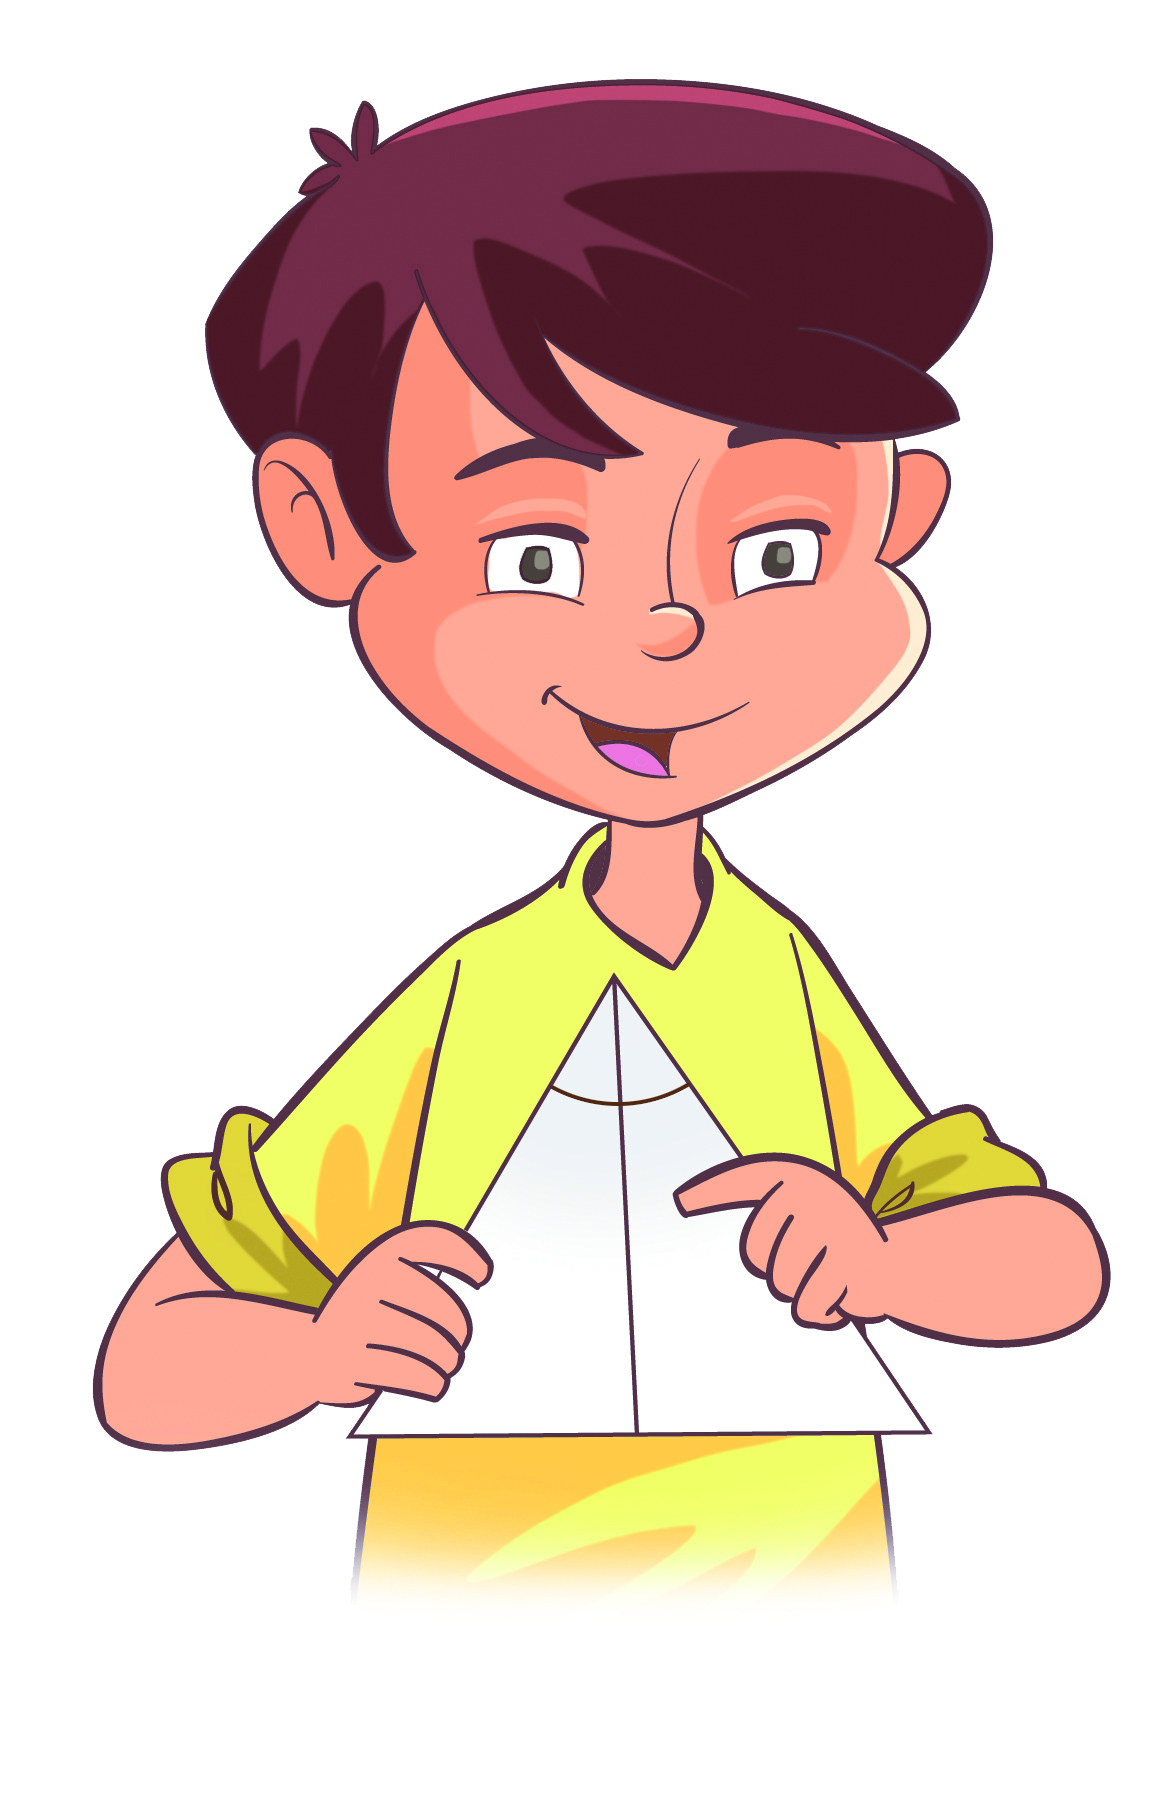 Ilustração. Busto de um menino branco com cabelos castanhos, vestindo blusa amarela. Ele está segurando uma folha que foi dobrada e mostrando a marca da dobra que ficou no meio do ângulo, dividindo-o em dois ângulos de mesma medida.